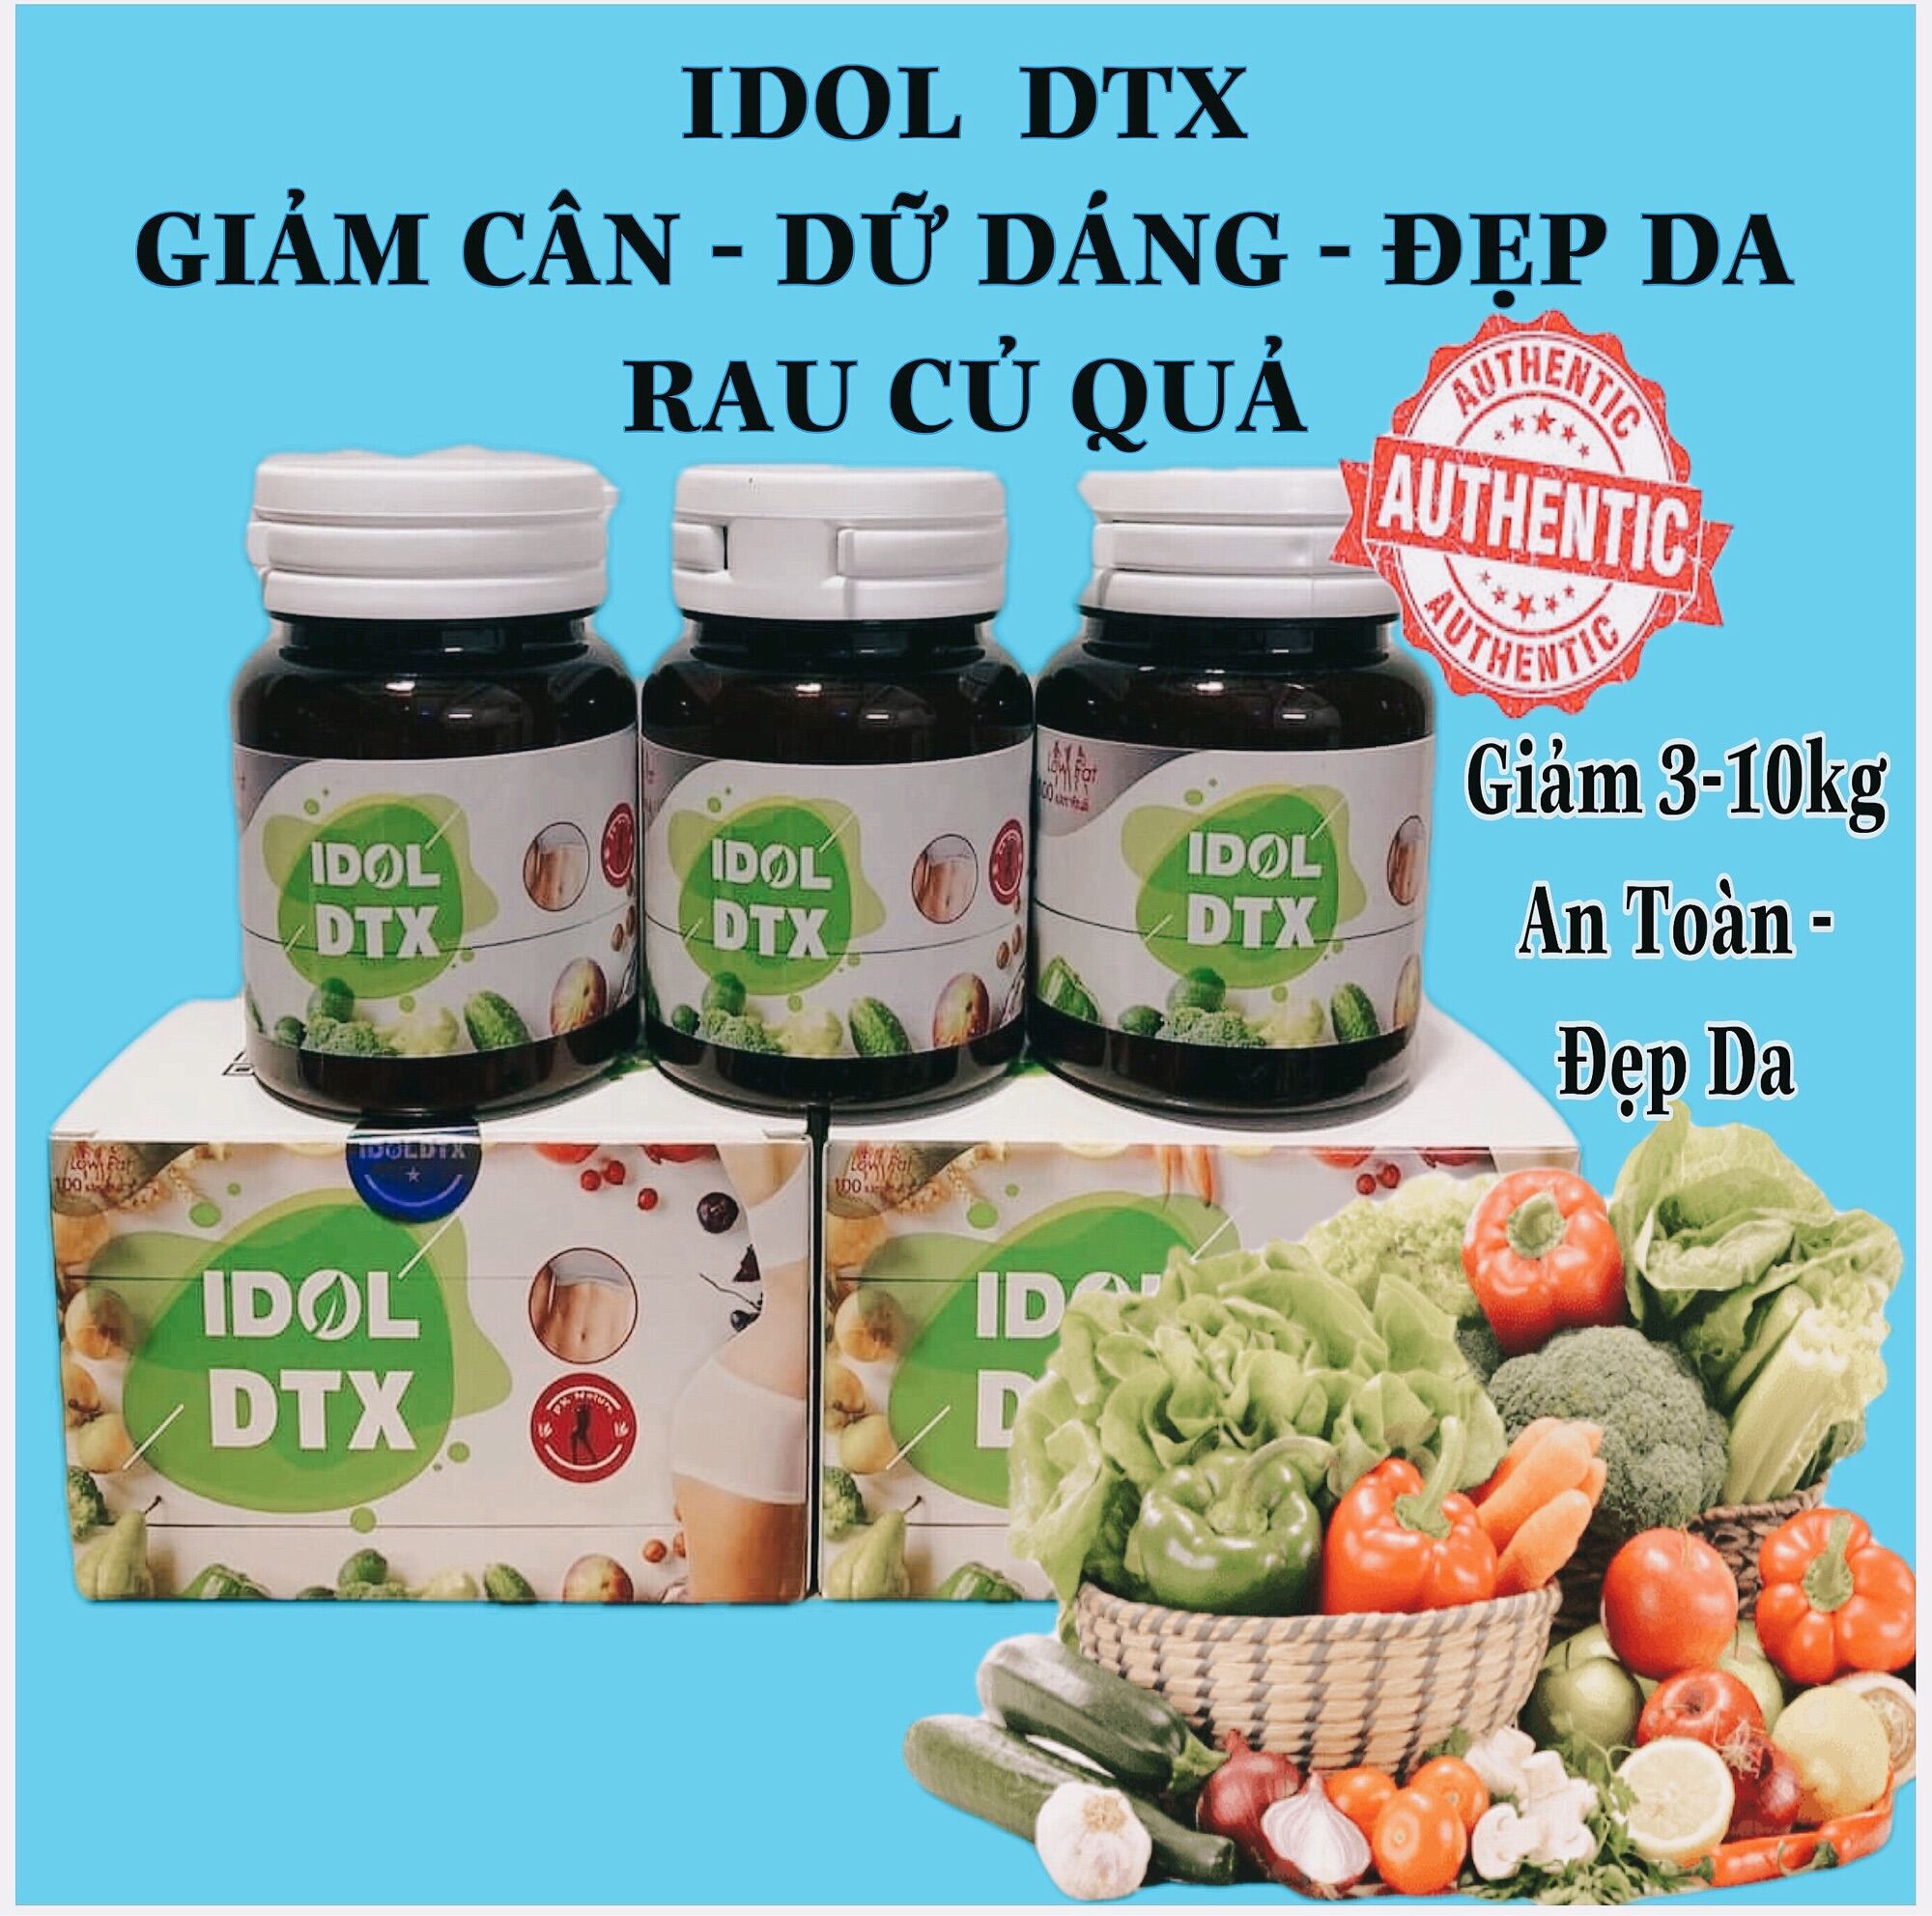 Giảm cân IDOL DTX hộp 60v rau củ quả [ Bao Giảm 3-10kg Đẹp Da ]